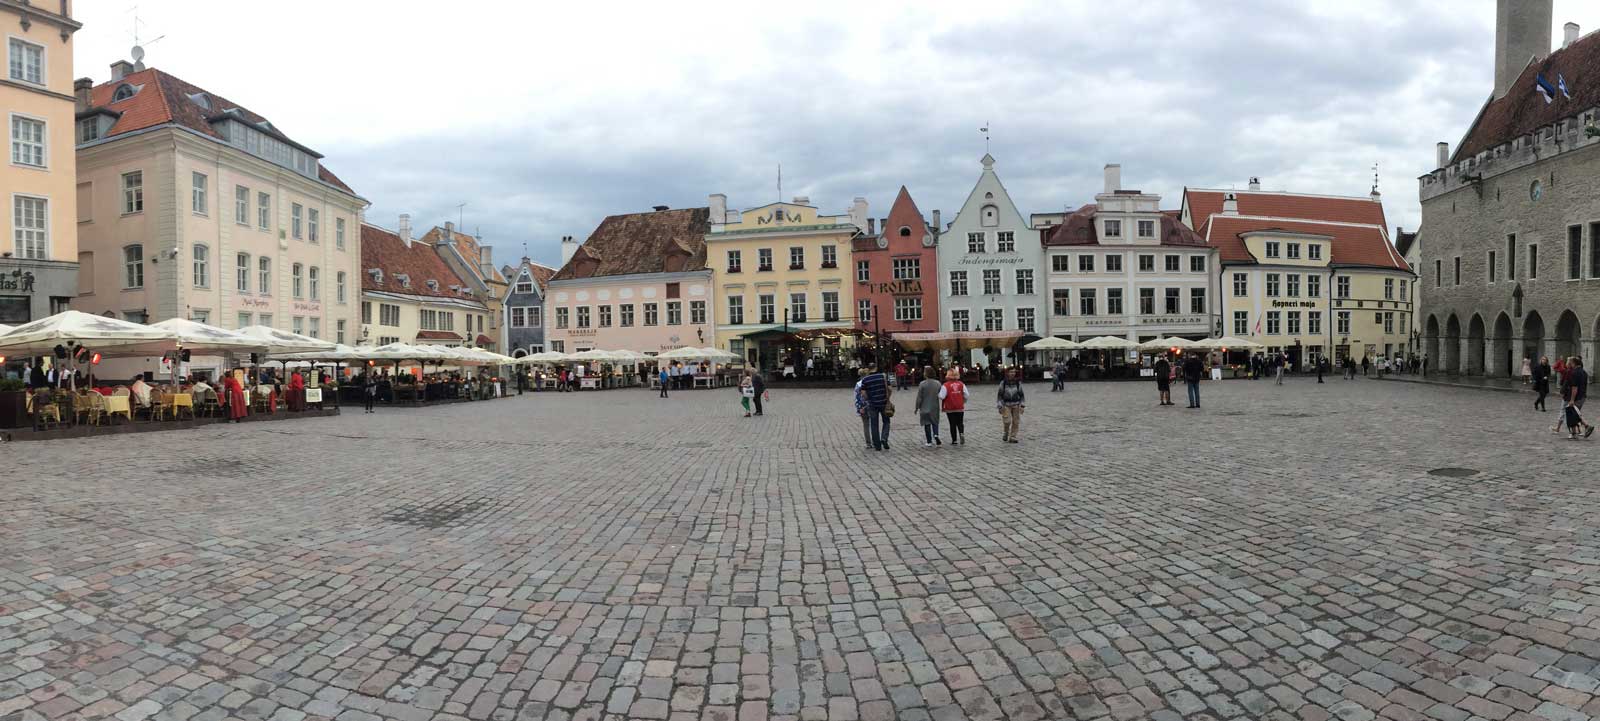 Tallinn, Marktplatz in der Altstadt